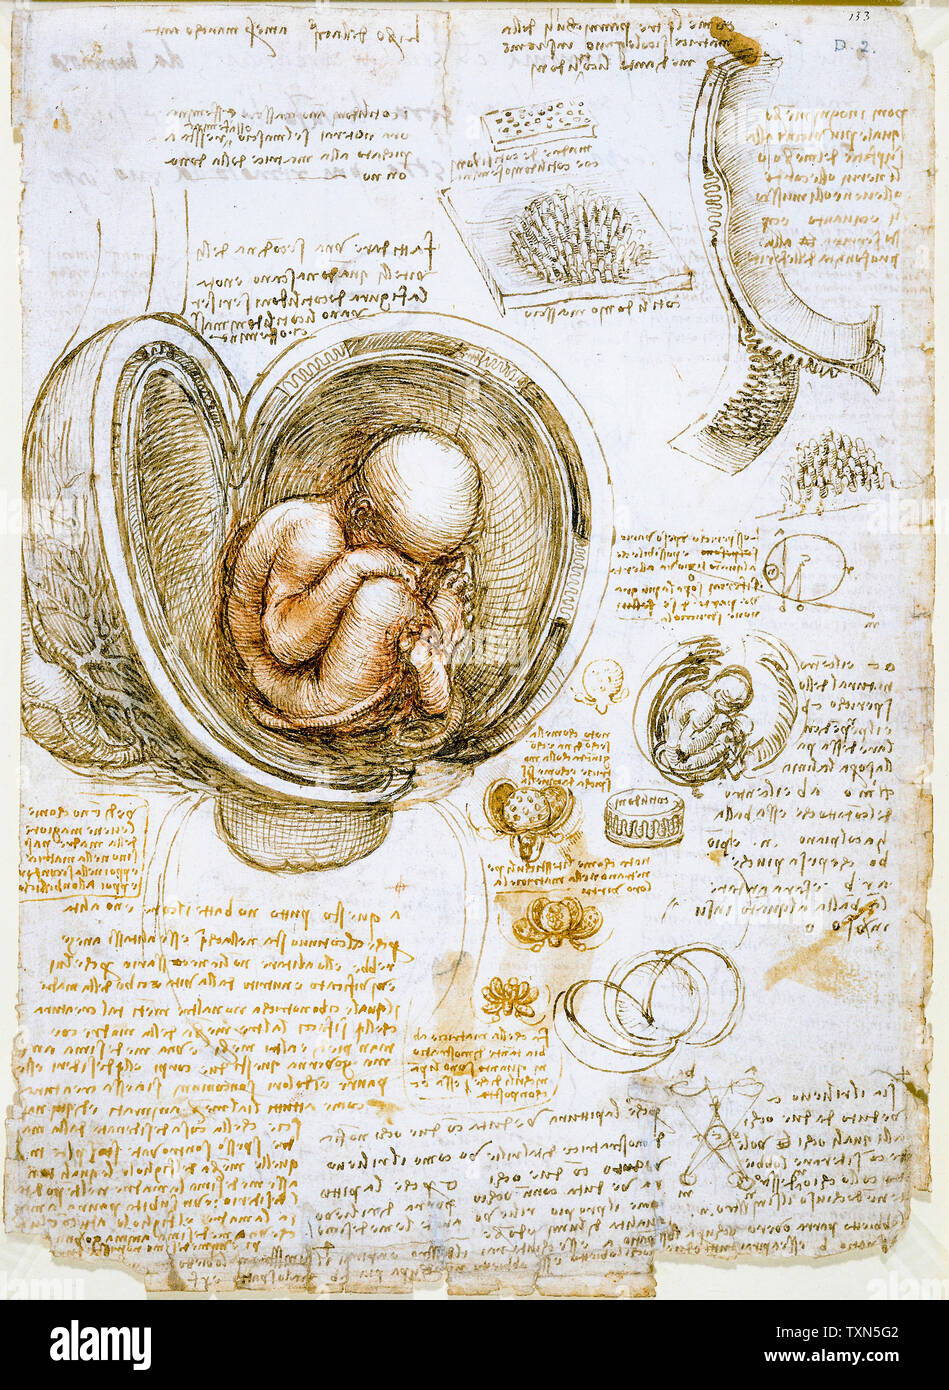 Dessins de Léonard de Vinci, études du fœtus dans l'utérus, dessin anatomique, circa 1510 Banque D'Images